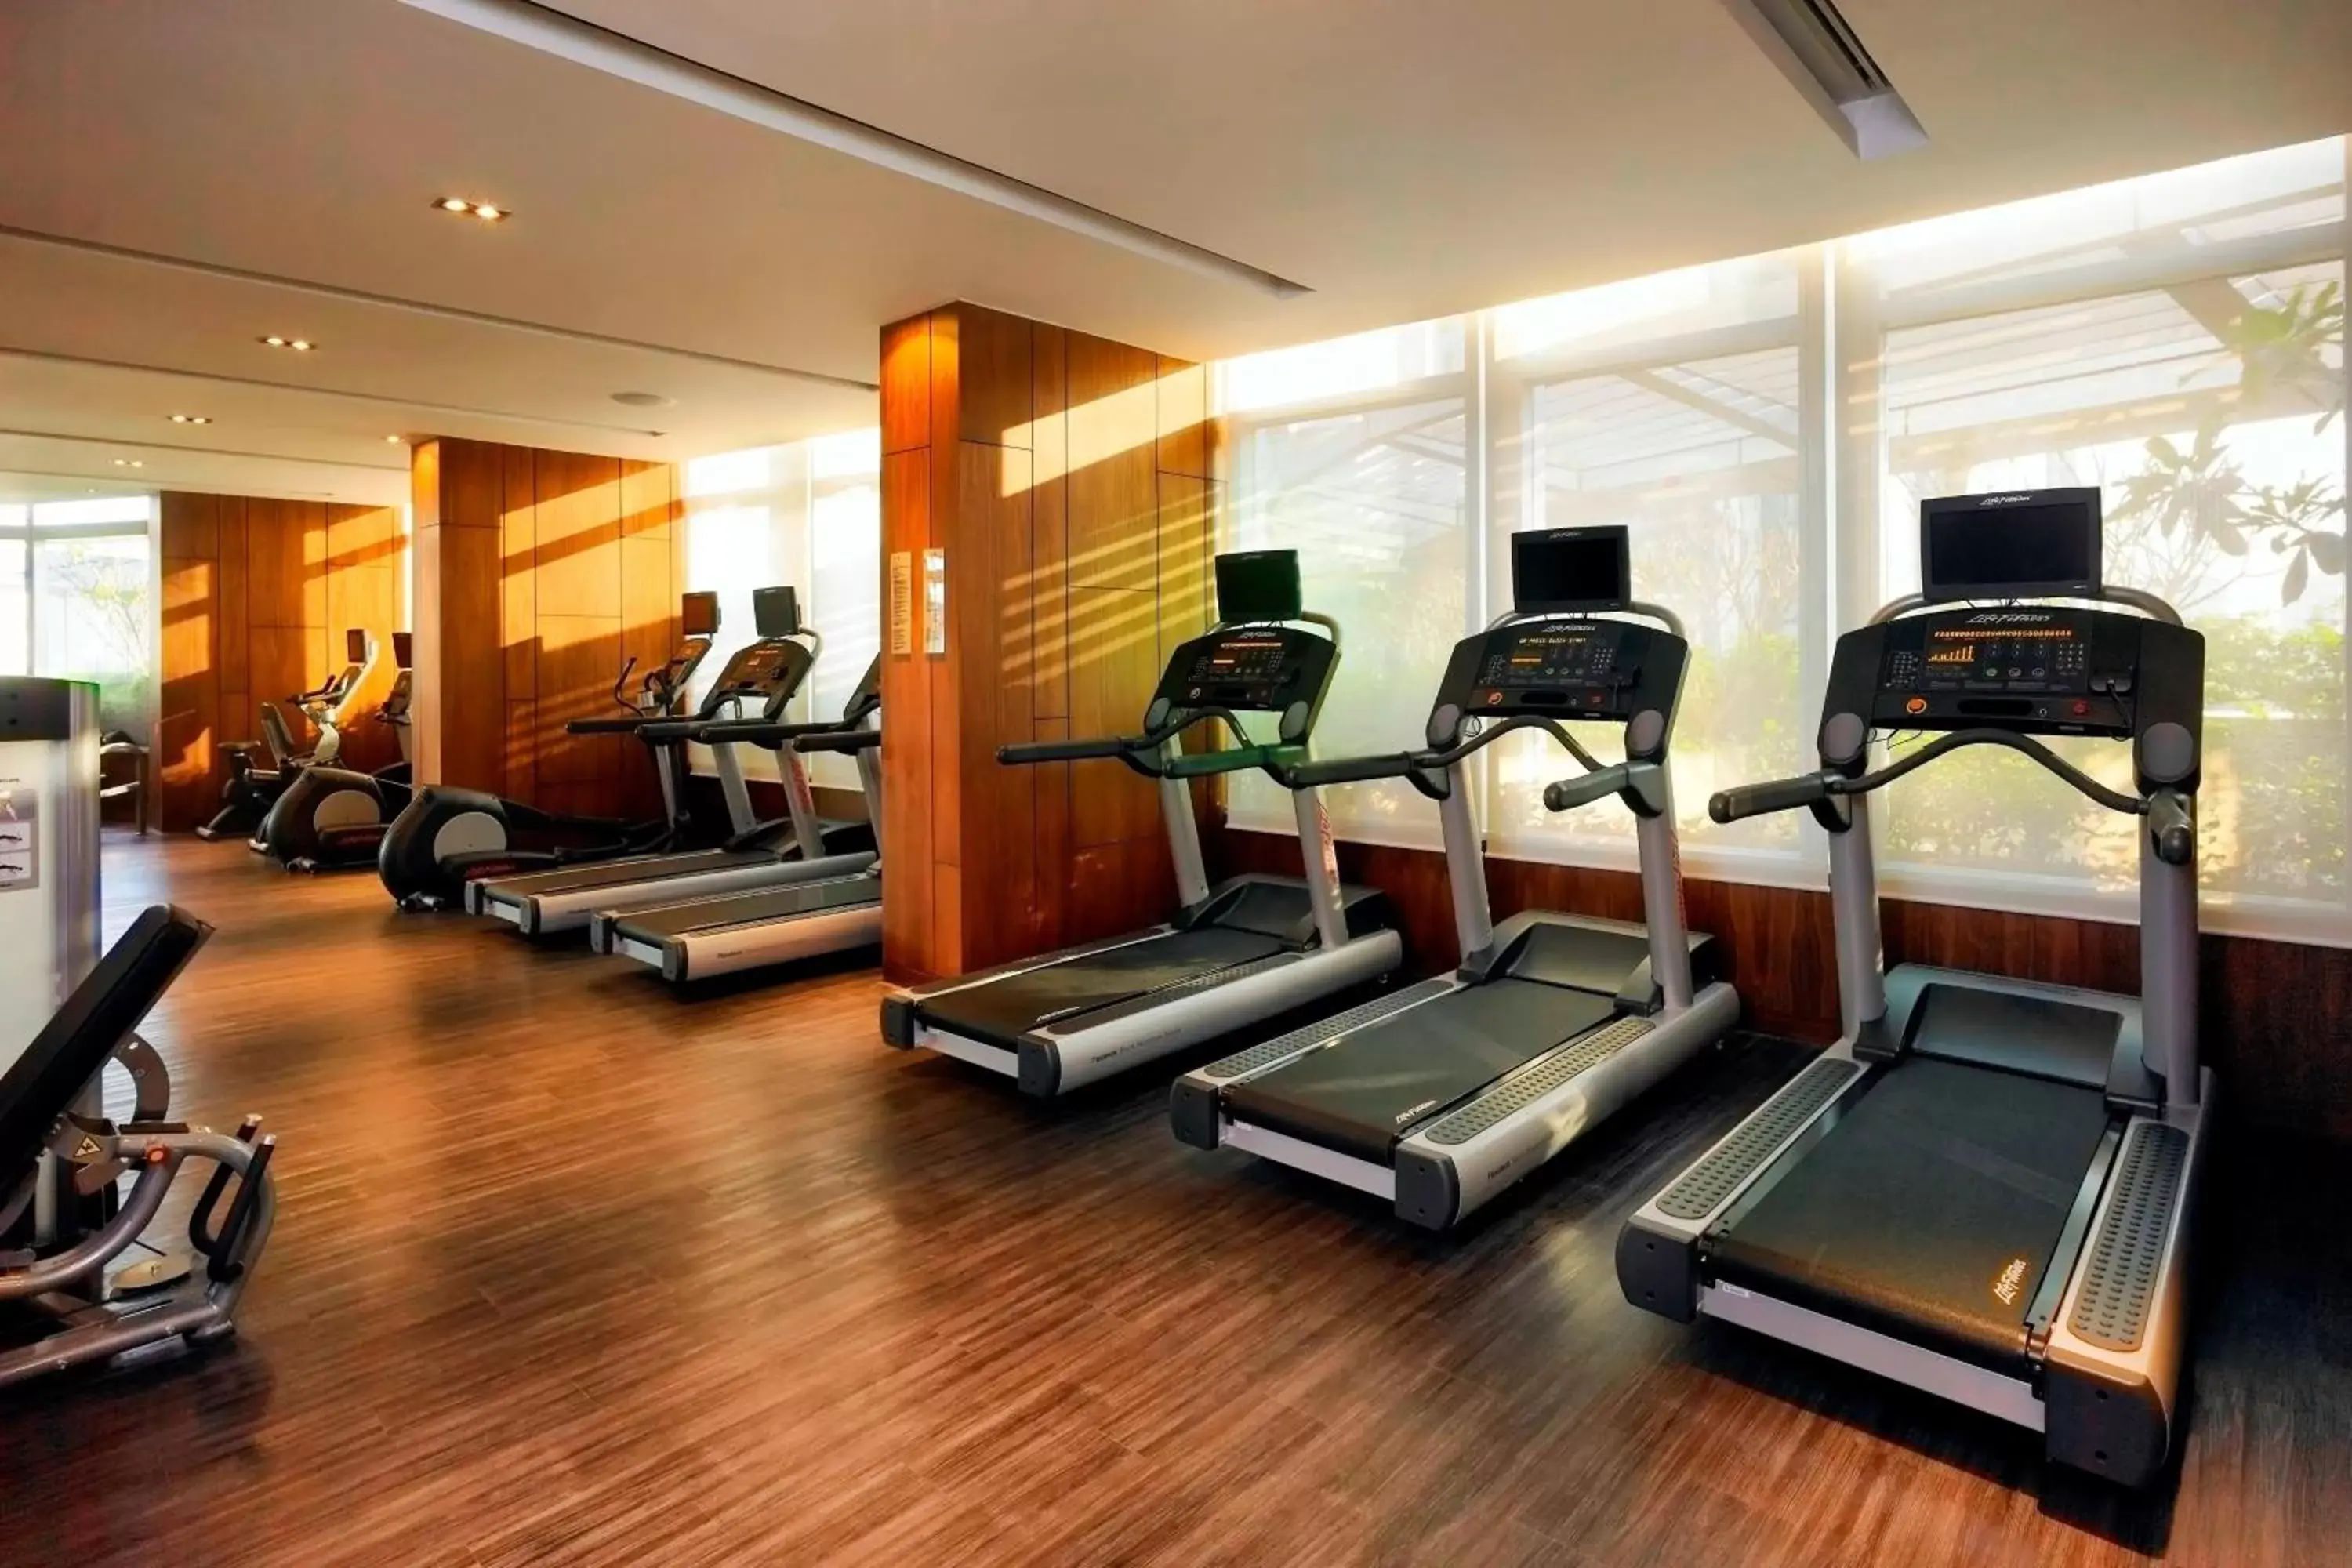 Fitness centre/facilities, Fitness Center/Facilities in Bangkok Marriott Hotel Sukhumvit